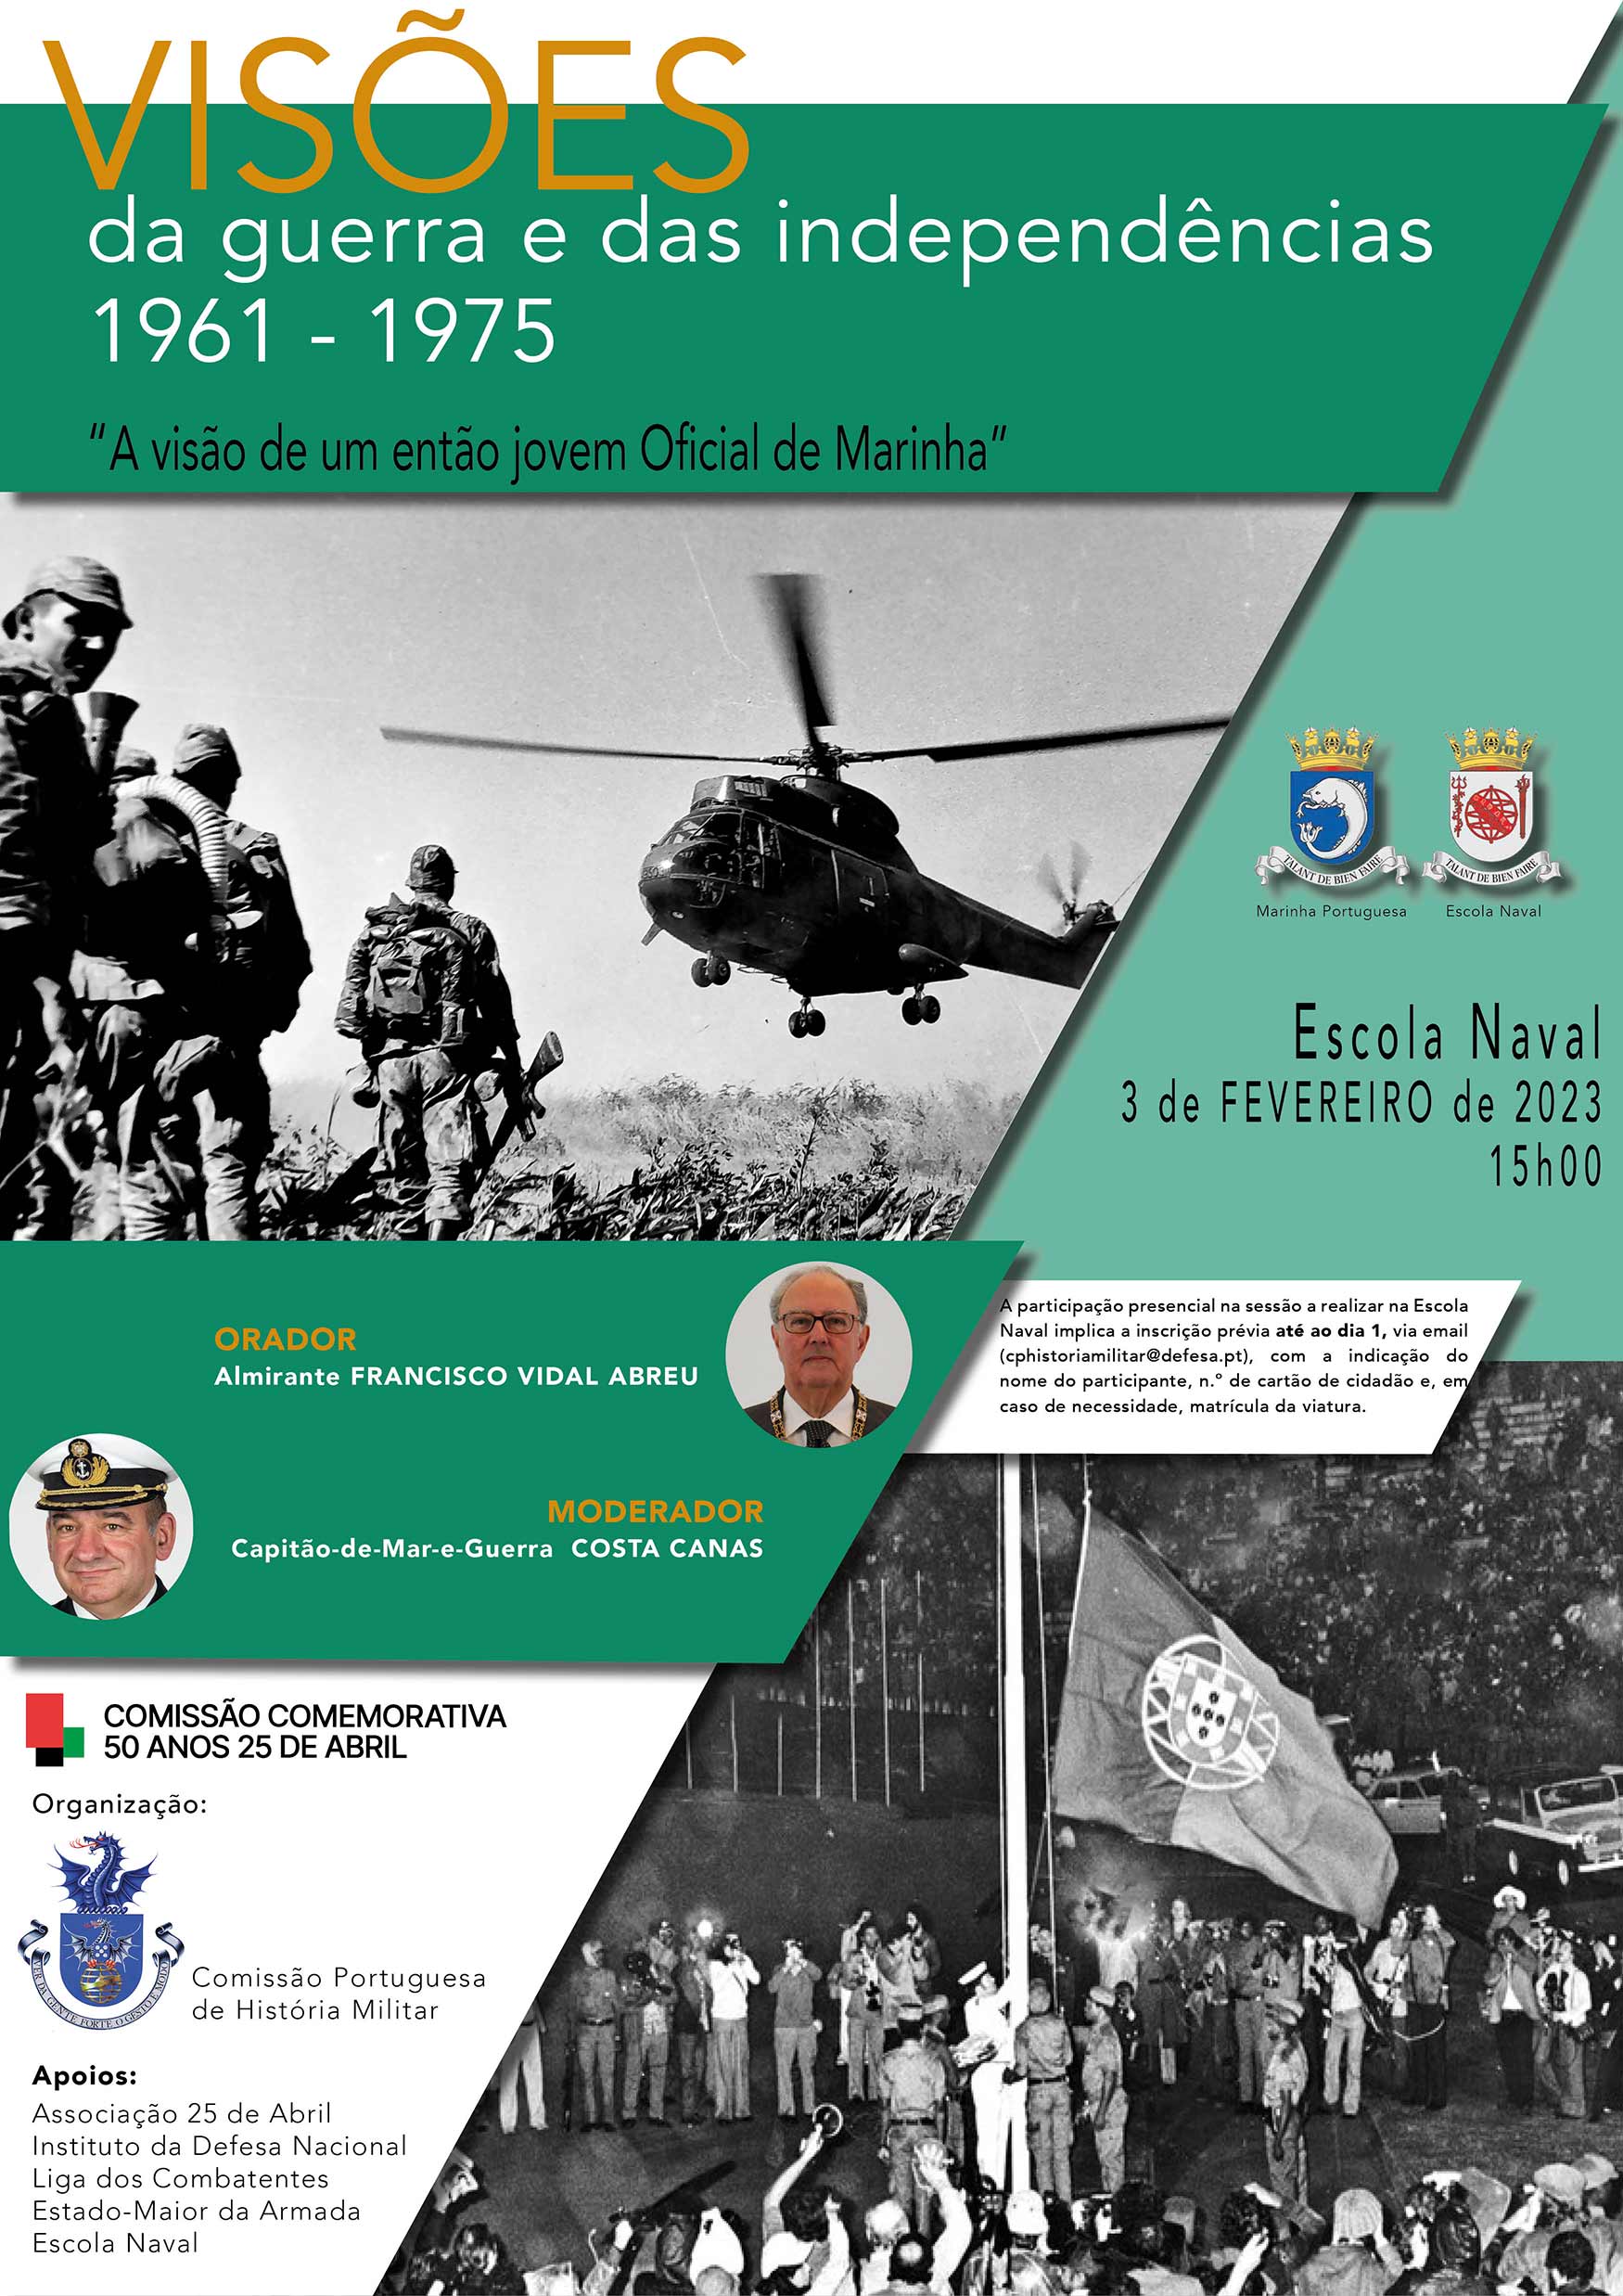 Ciclo de Visões da Guerra e das Independências 1961-1975